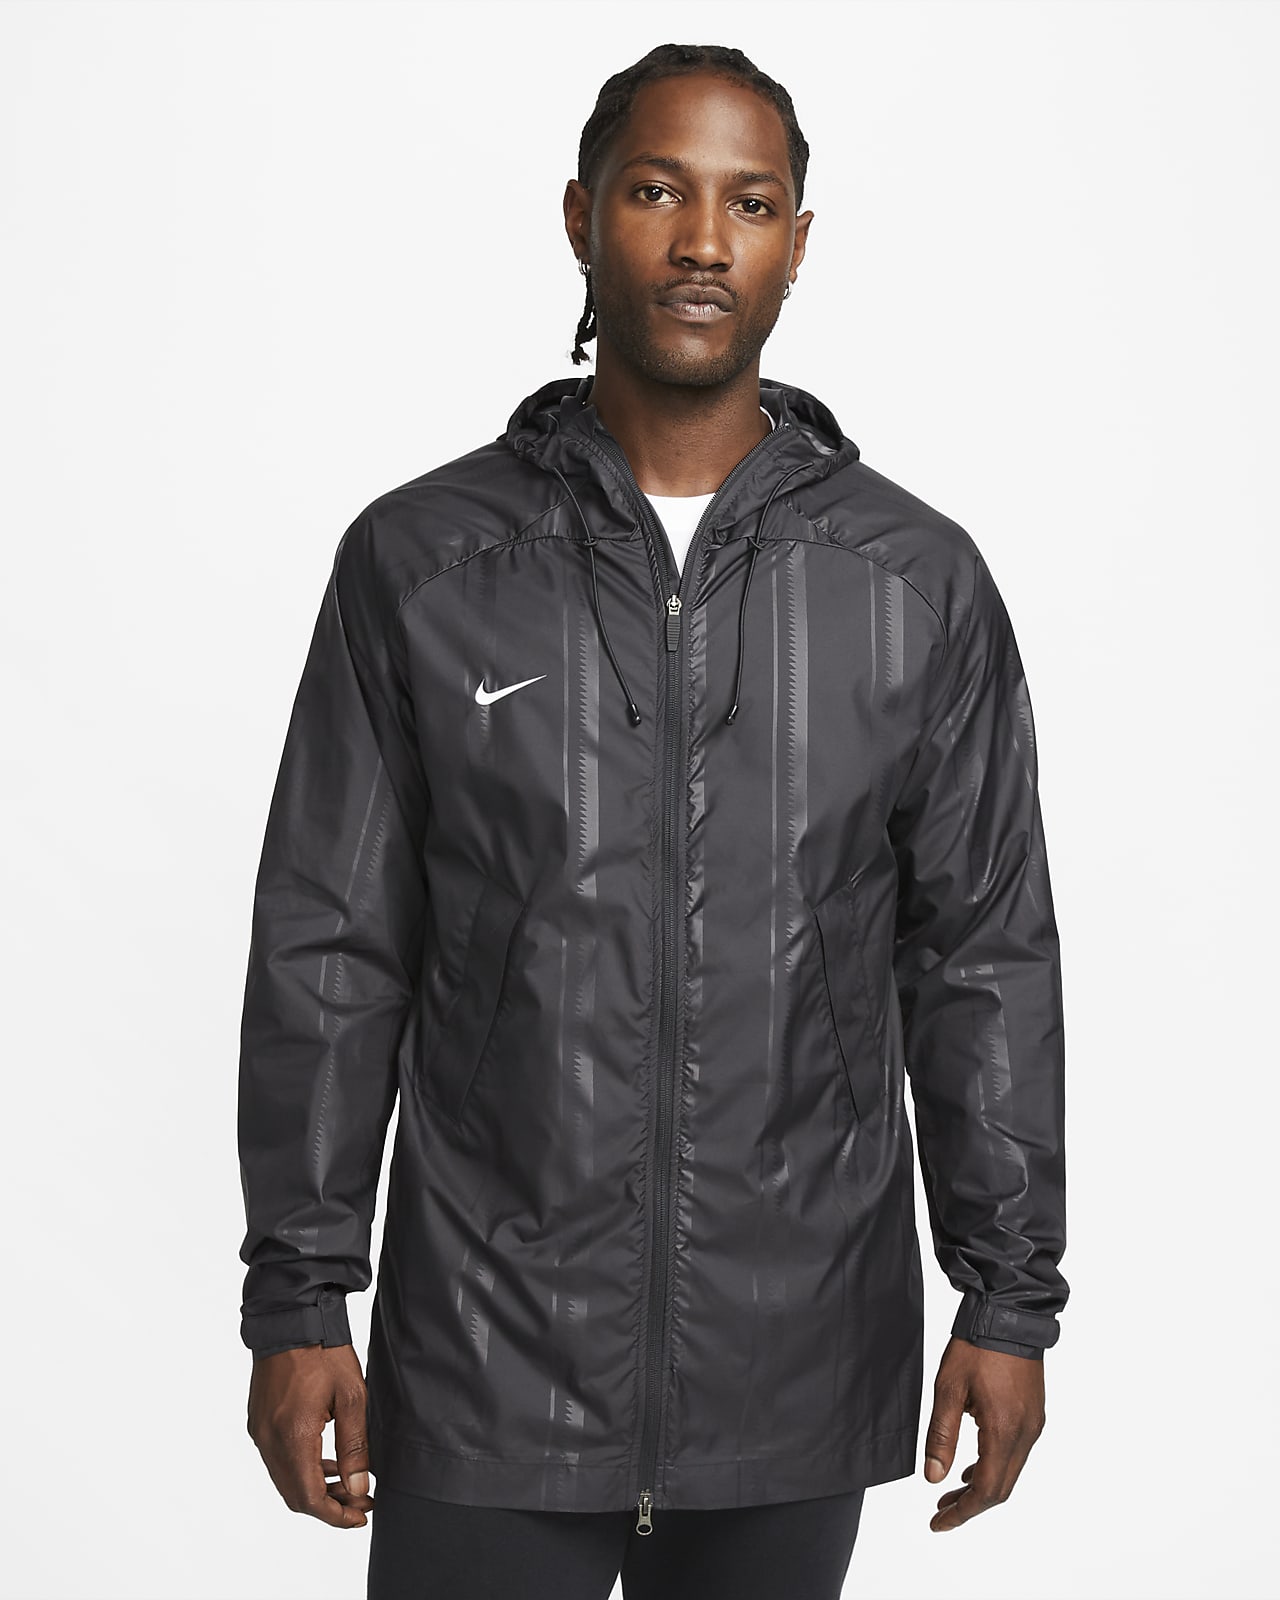 Storm-FIT Academy Pro Chaqueta con capucha de fútbol para la lluvia con estampado - Hombre. Nike ES